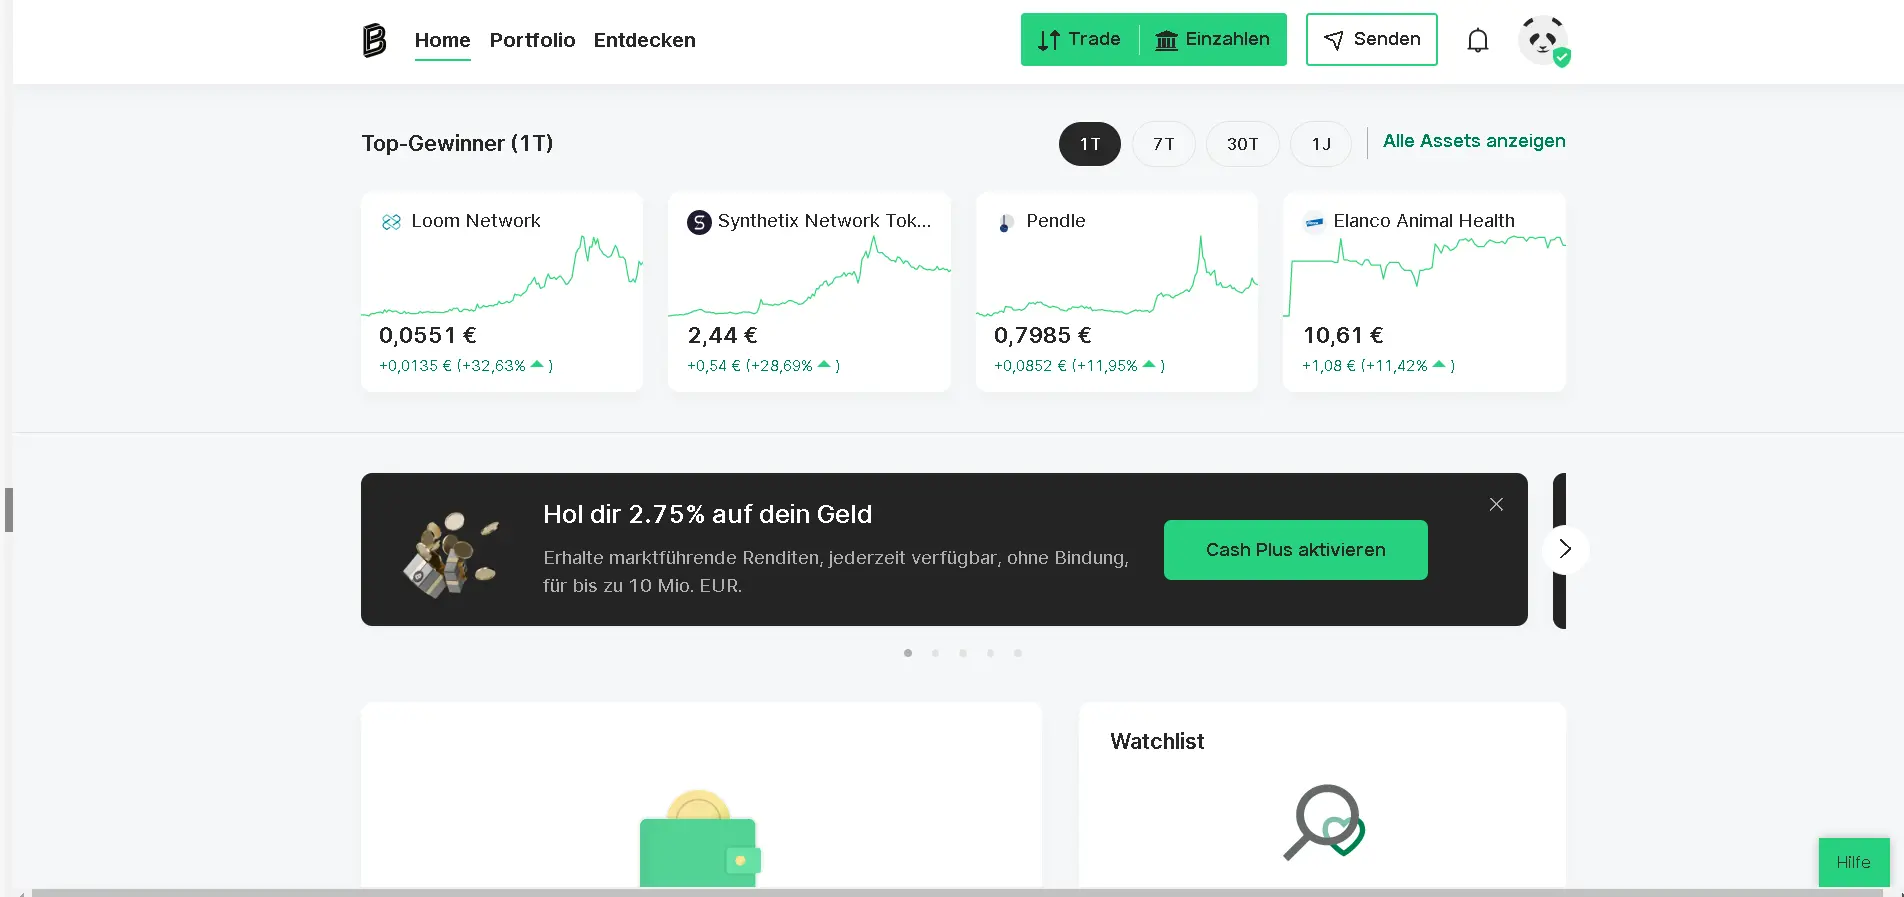 Die Benutzeroberfläche der österreichischen Krypto-Plattform Bitpanda